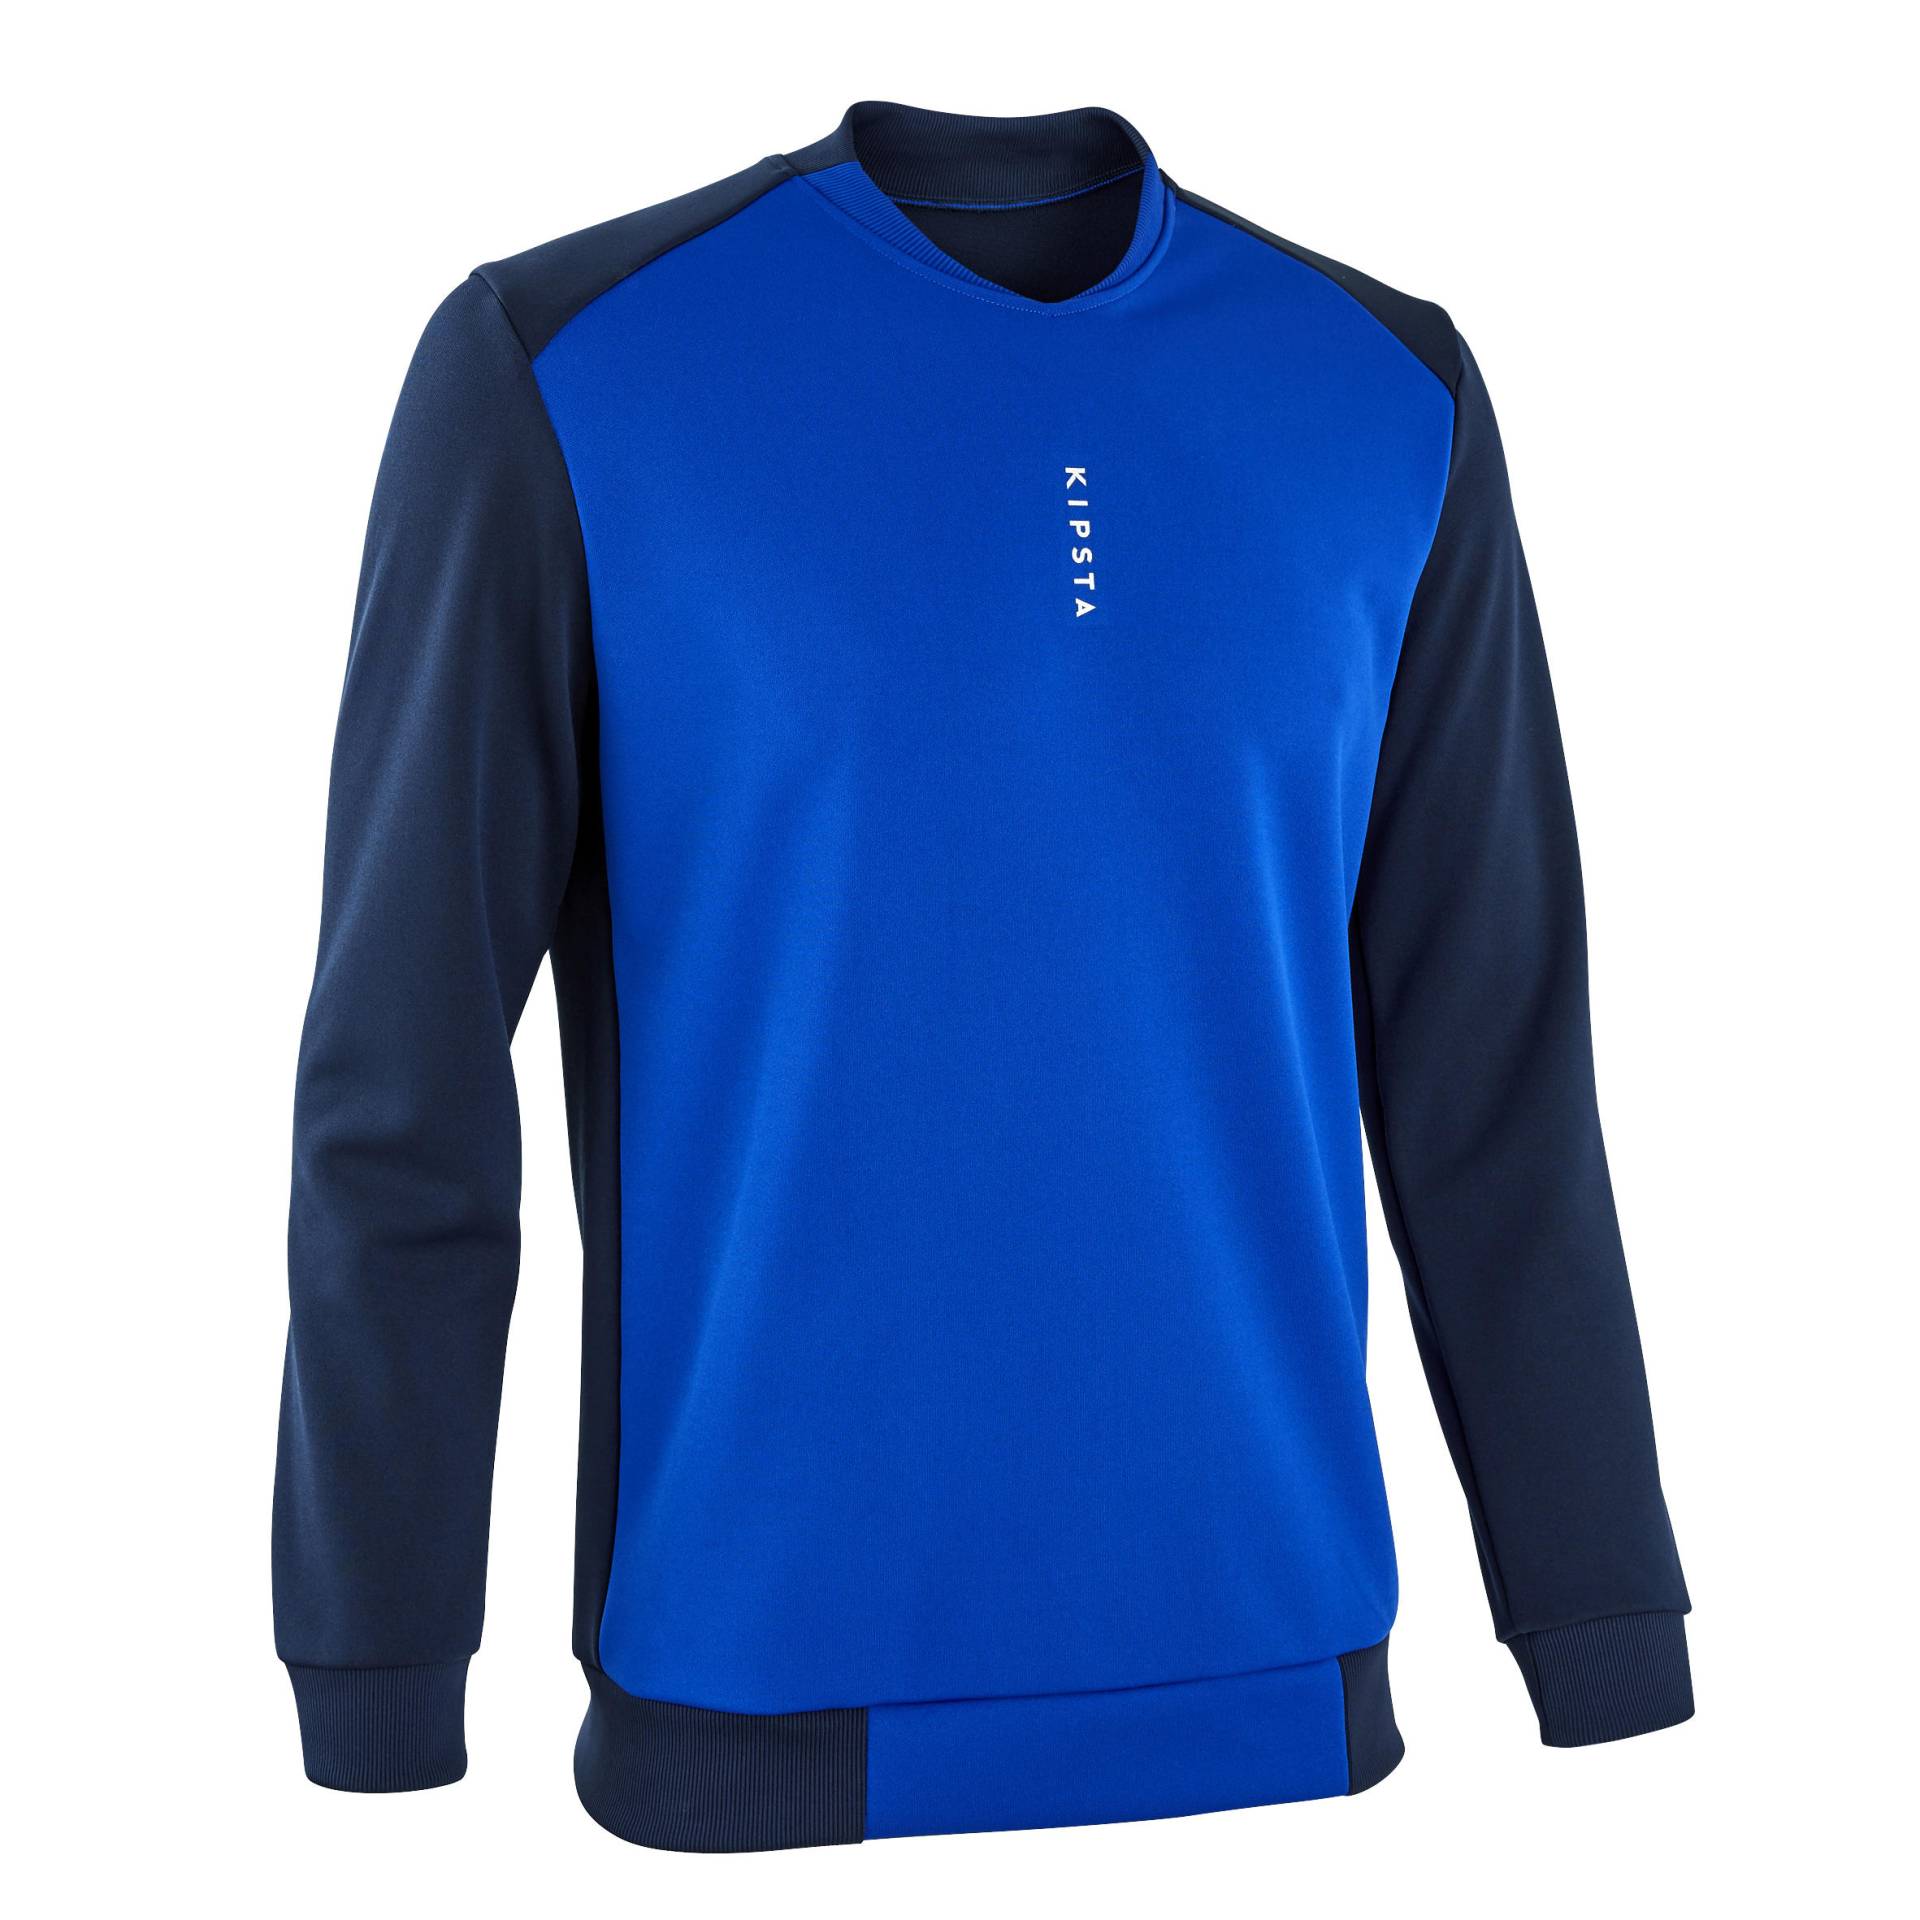 Damen/Herren Fussball Sweatshirt - T100 dunkelblau von KIPSTA